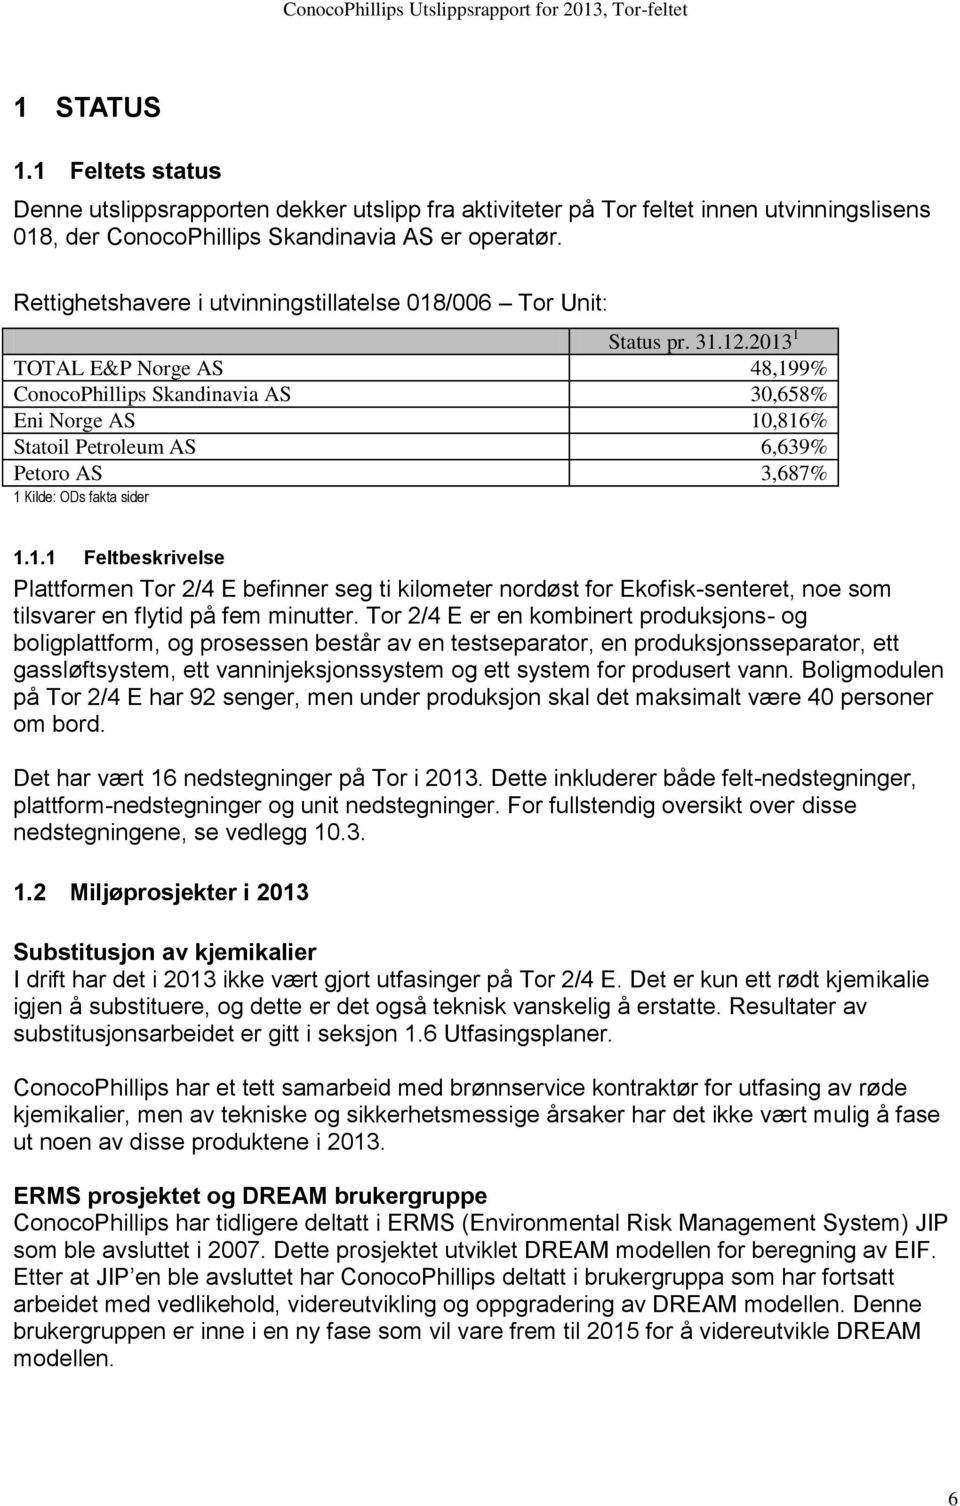 2013 1 TOTAL E&P Norge AS 48,199% ConocoPhillips Skandinavia AS 30,658% Eni Norge AS 10,816% Statoil Petroleum AS 6,639% Petoro AS 3,687% 1 Kilde: ODs fakta sider 1.1.1 Feltbeskrivelse Plattformen Tor 2/4 E befinner seg ti kilometer nordøst for Ekofisk-senteret, noe som tilsvarer en flytid på fem minutter.